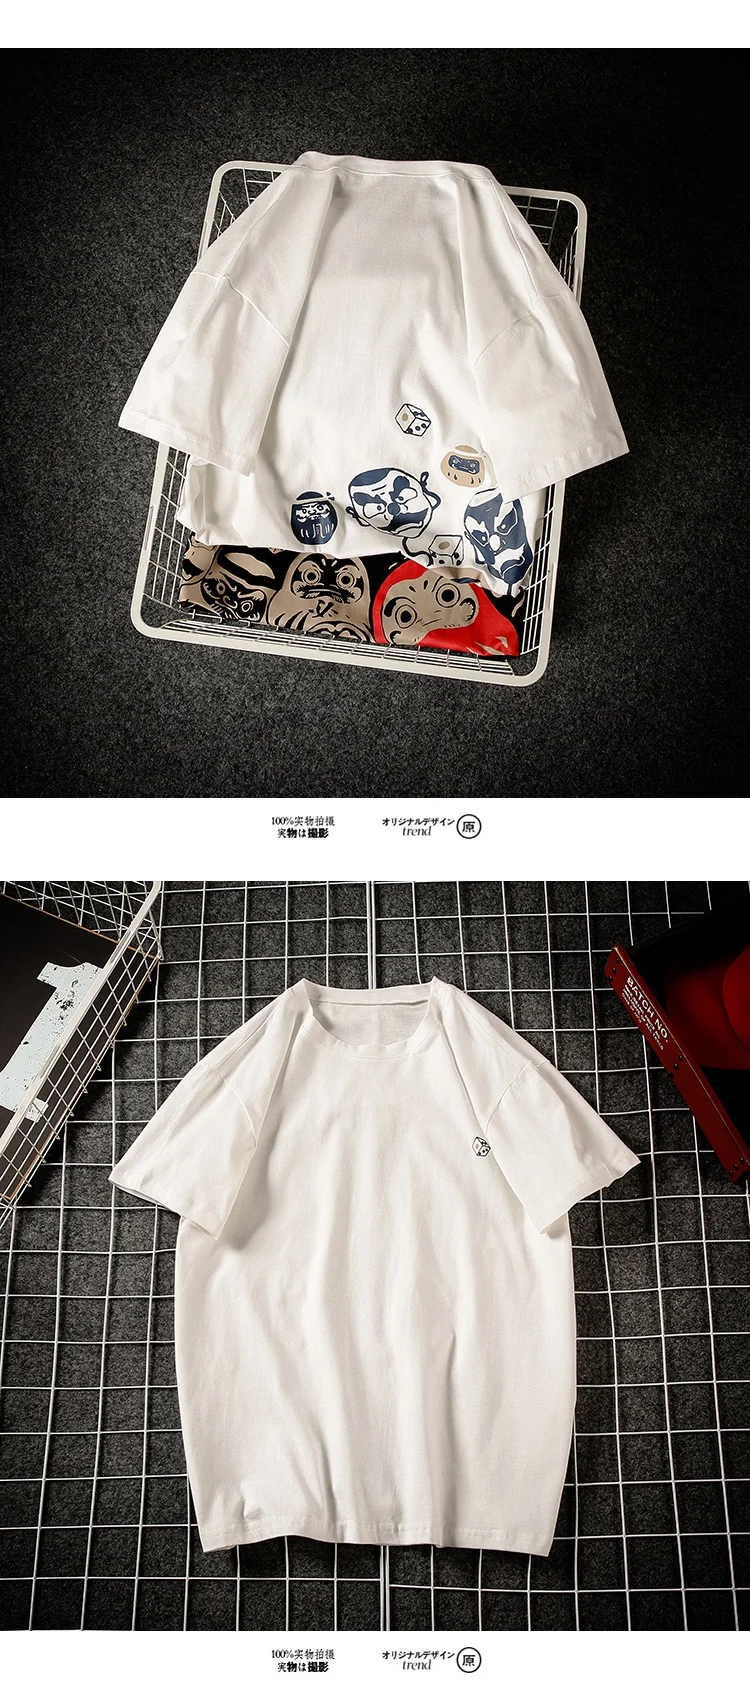 KUANGNAN Tumbler футболка с принтом Мужская Harajuku футболка мужская летняя топ футболки 5XL хип-хоп Уличная одежда новое поступление